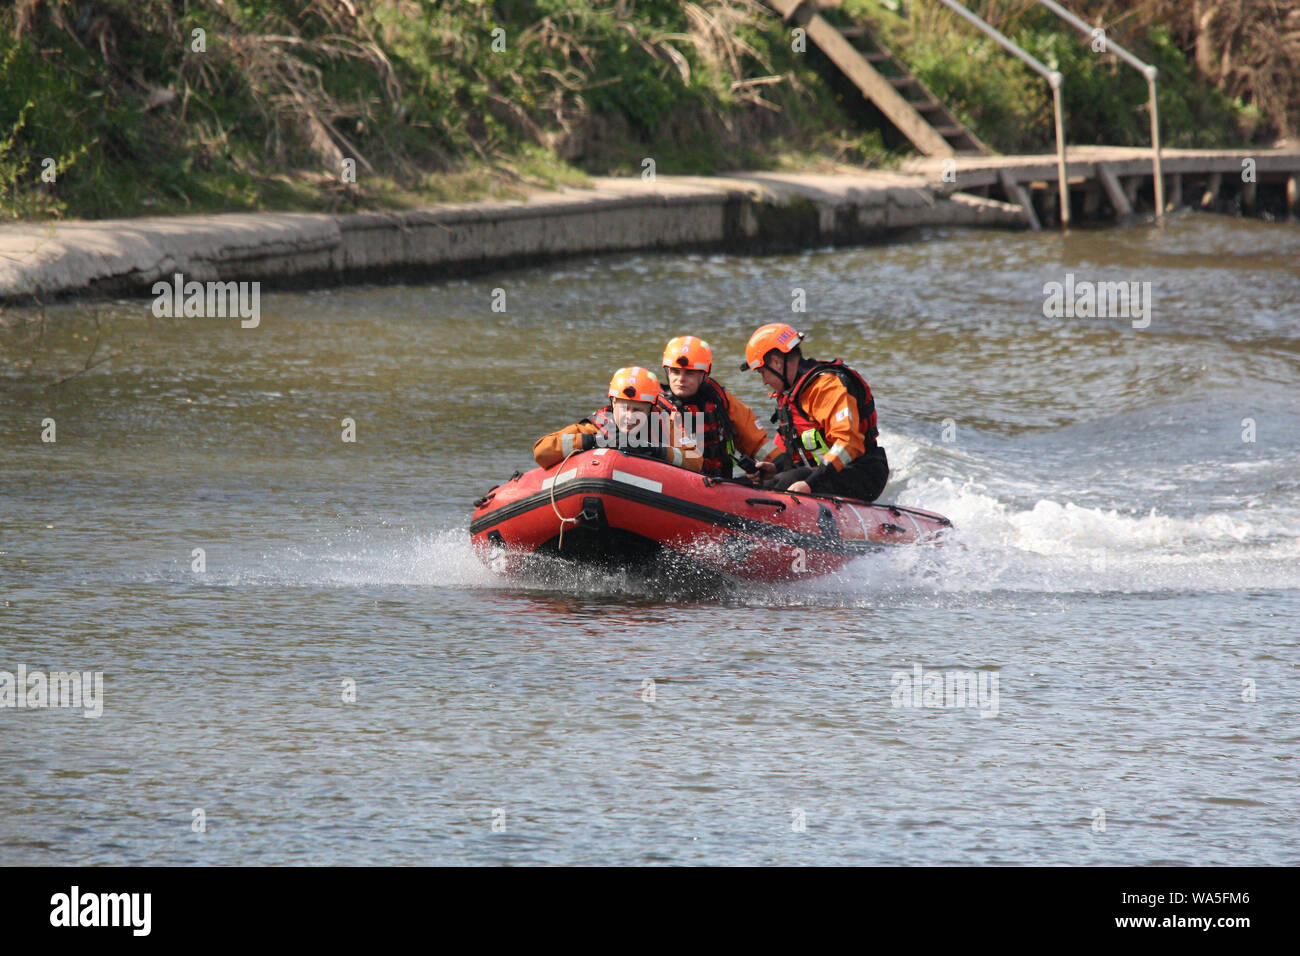 Worcester, Royaume-Uni, 04/13/2010. Les équipes d'incendie l'homme gonflable, sauvetage en rivière sur la rivière Severn. Recherche et sauvetage en rivière pour la formation de l'artisanat Banque D'Images